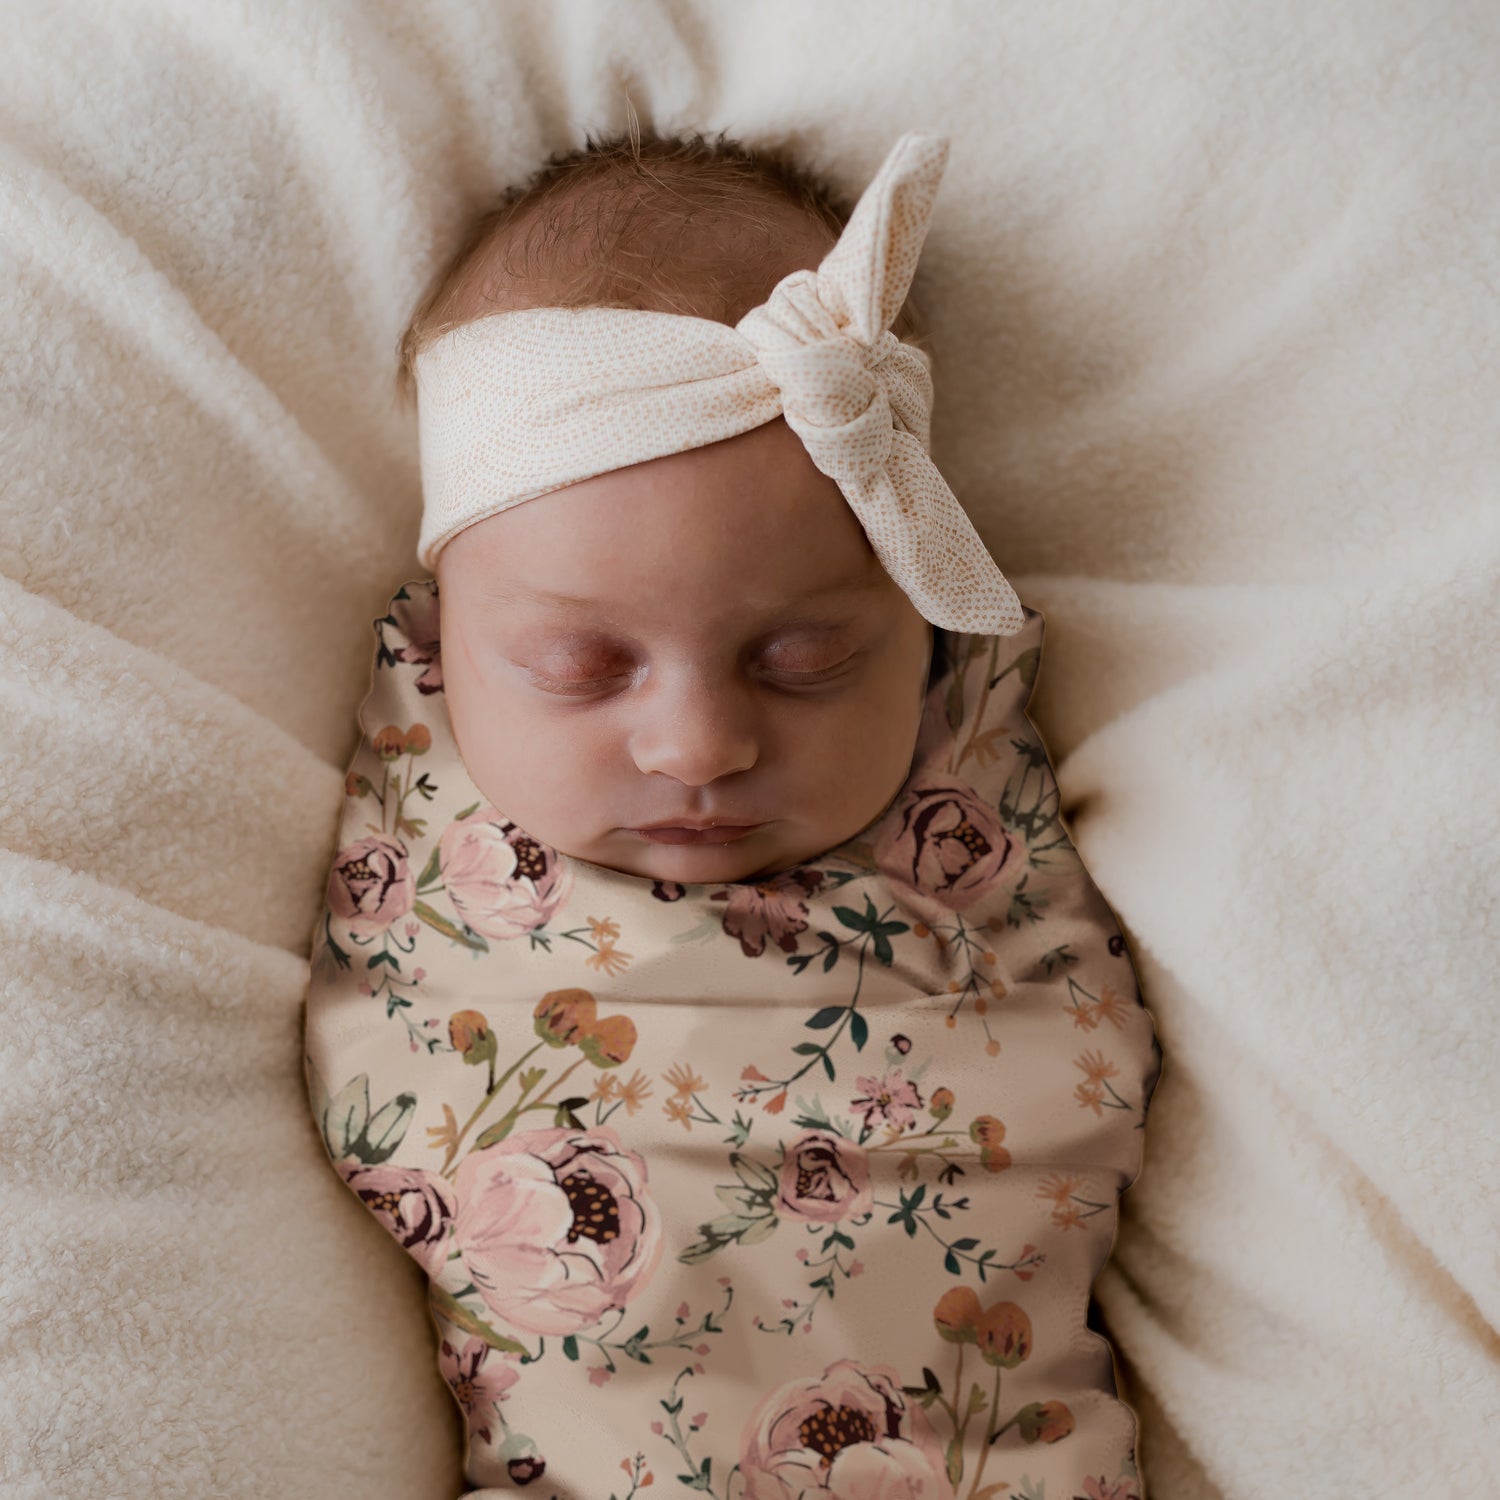 Een vredige pasgeborene ingebakerd in een gebloemde Inbakerdoek Blamy van Yumi Baby, met een strikhoofdband, sereen rustend op een zacht, crèmekleurig oppervlak.